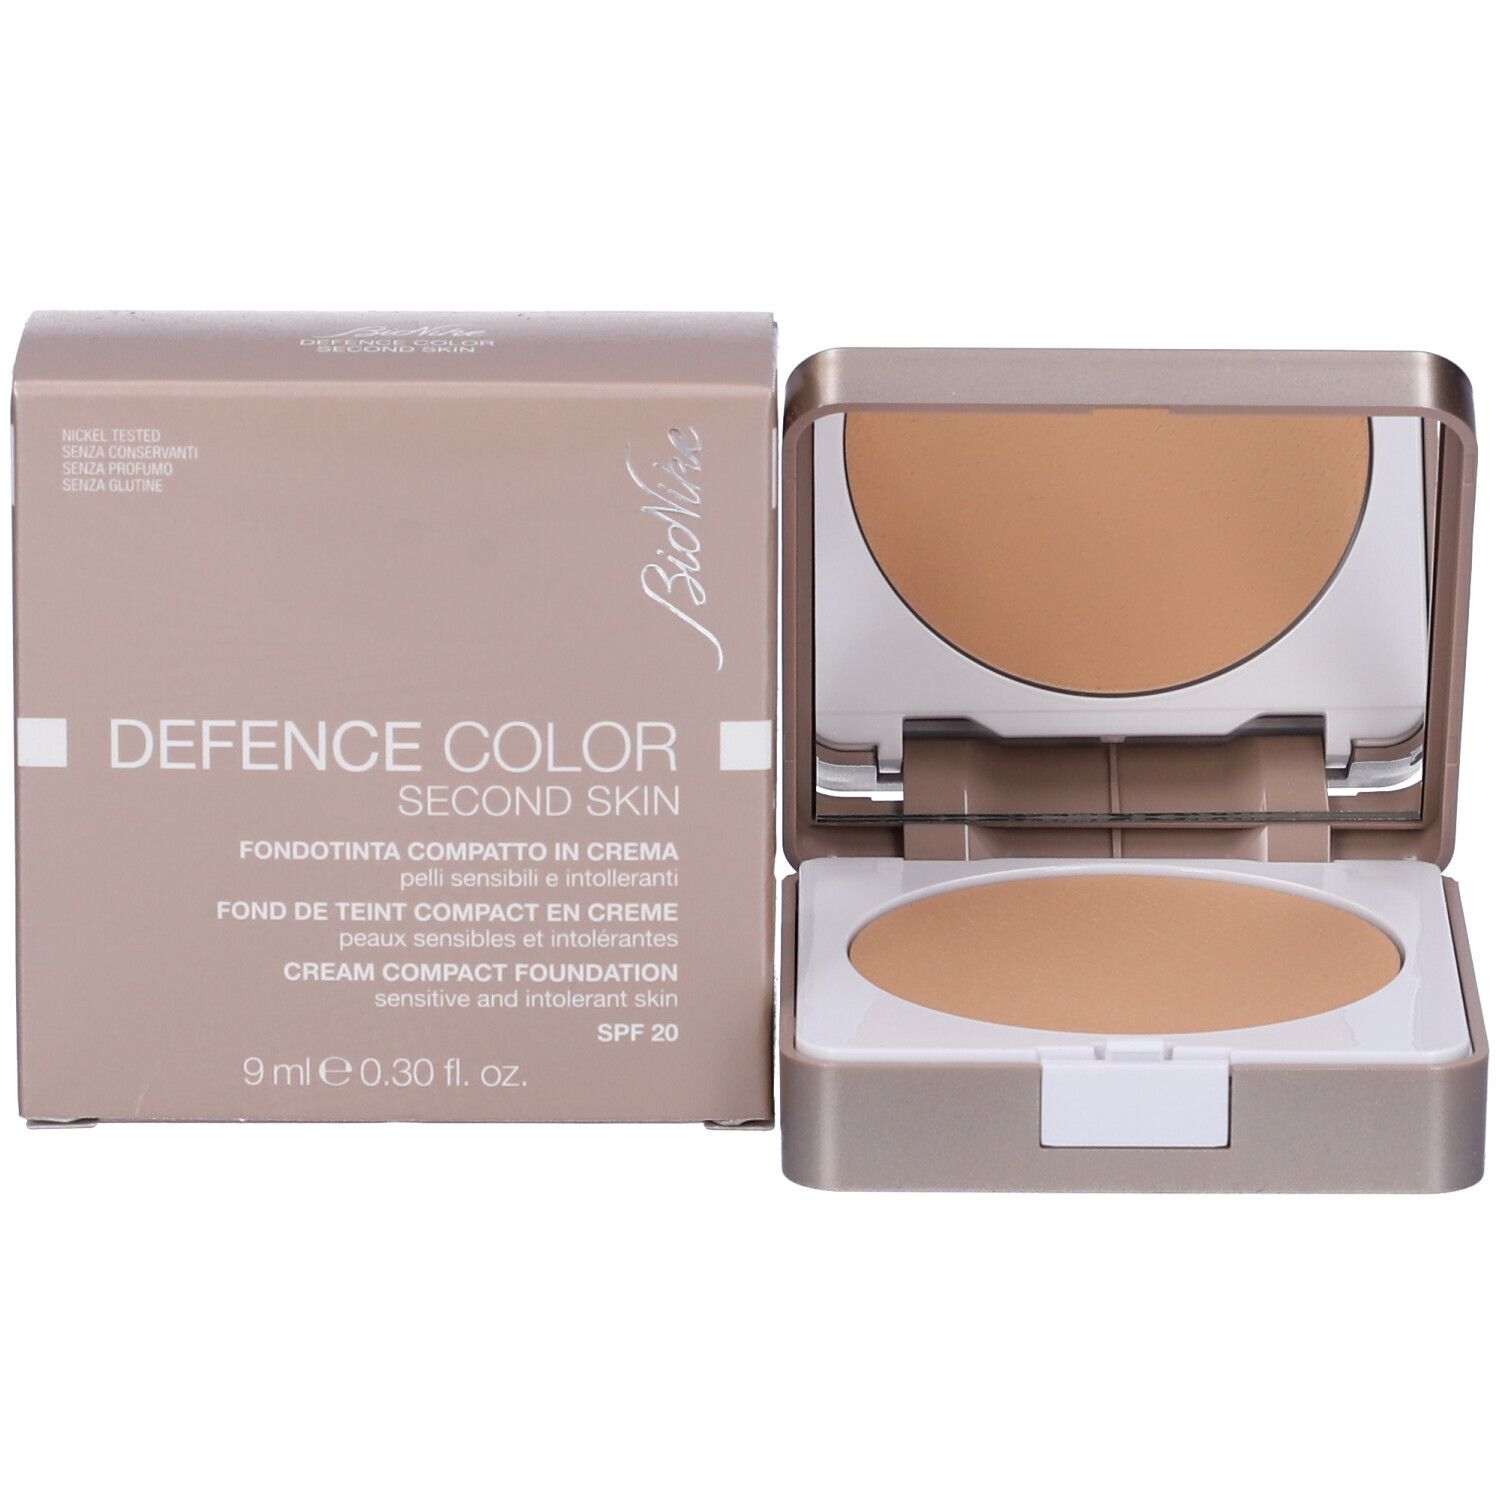 BioNike Defence Color Second Skin Fondotinta Compatto 501 Sabbia